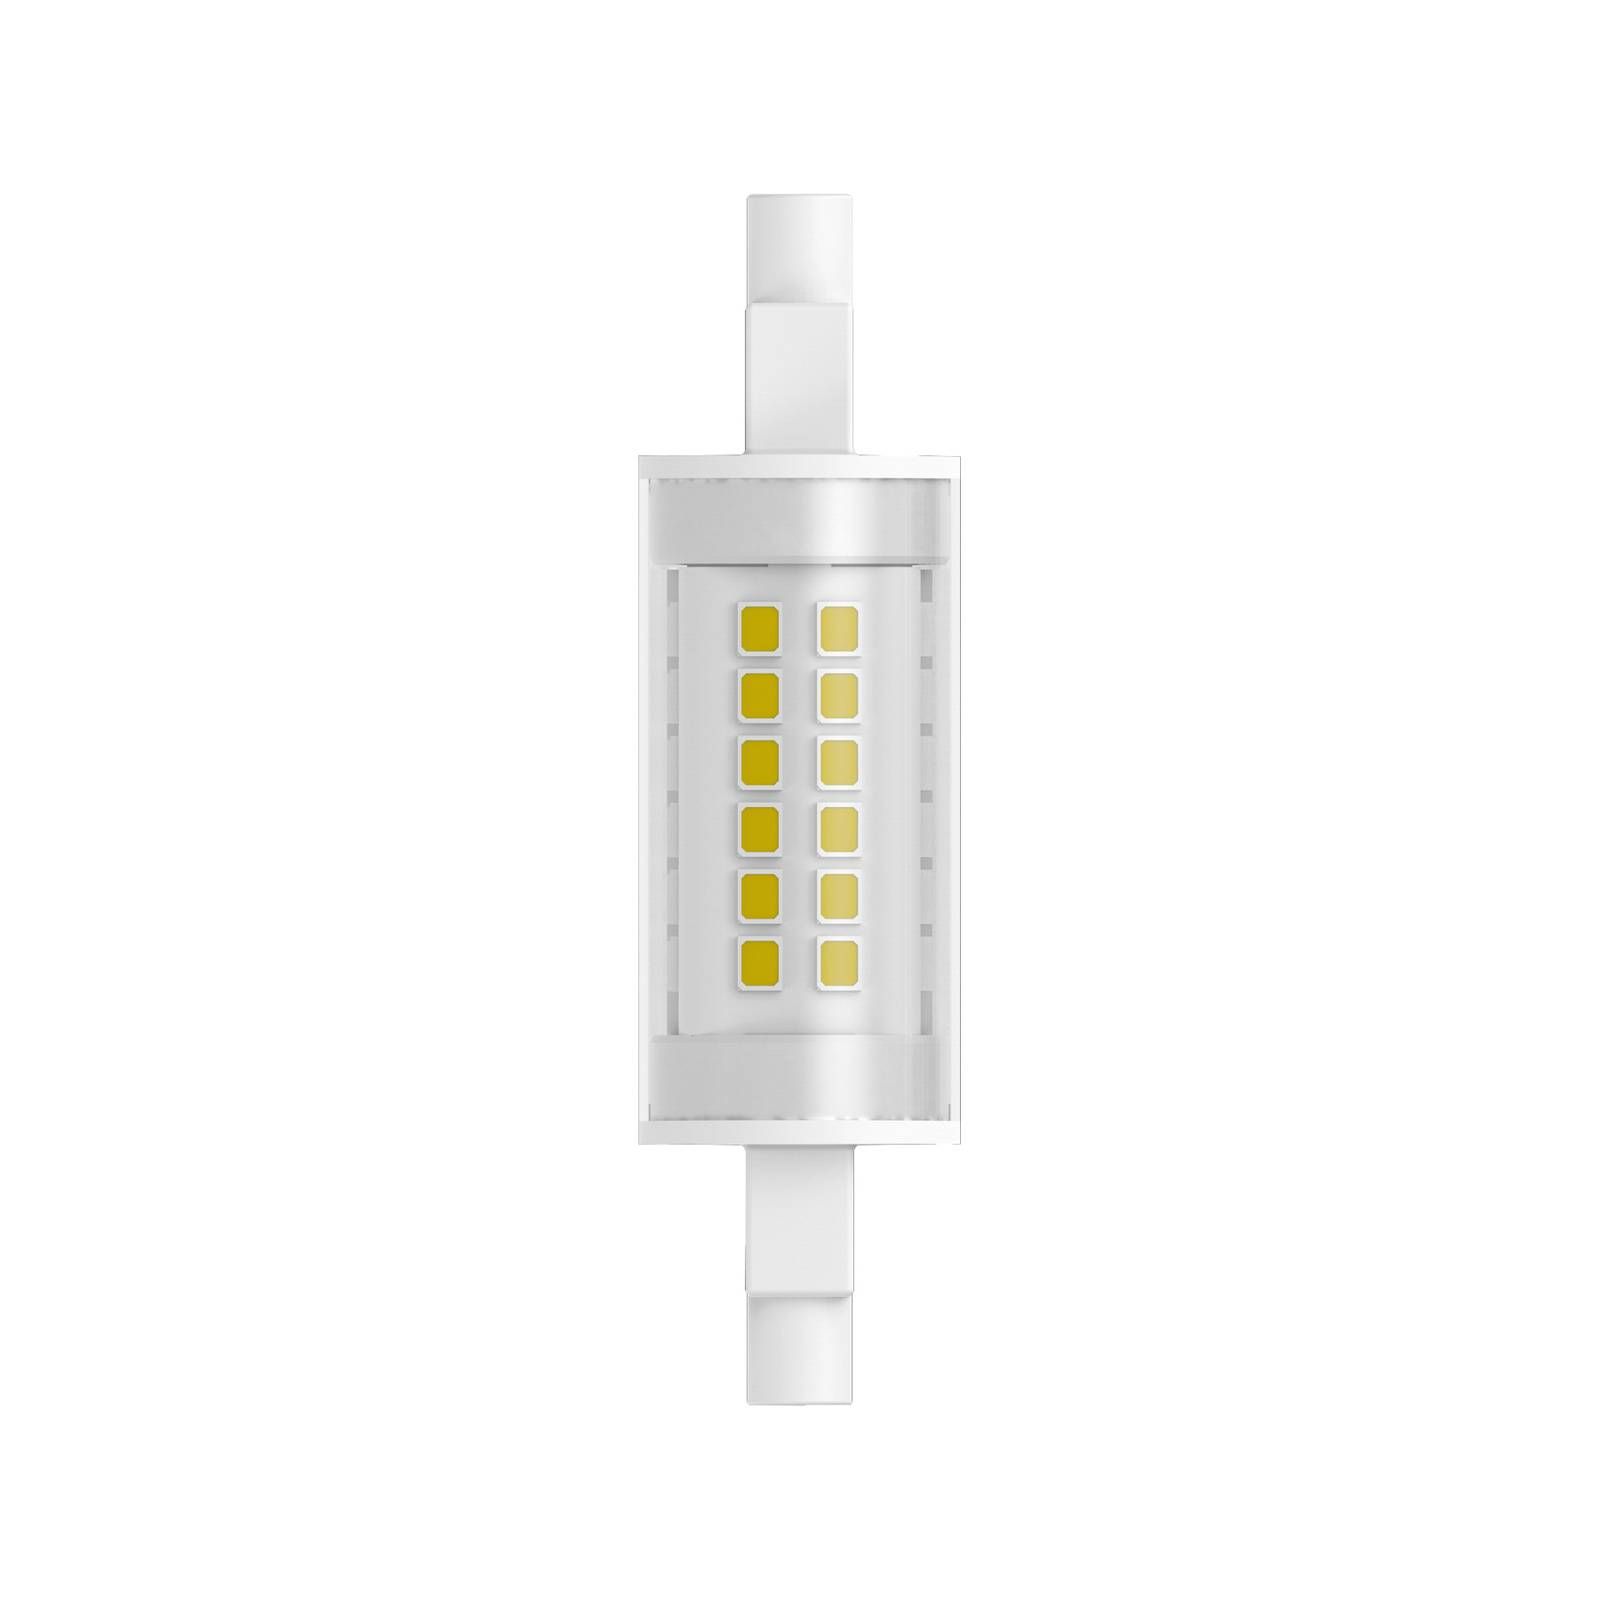 Radium LED Essence žiarovka Slim R7s 12W 1521lm, plast, kov, R7s 117.6 mm, 12W, Energialuokka: E, P: 11.8 cm